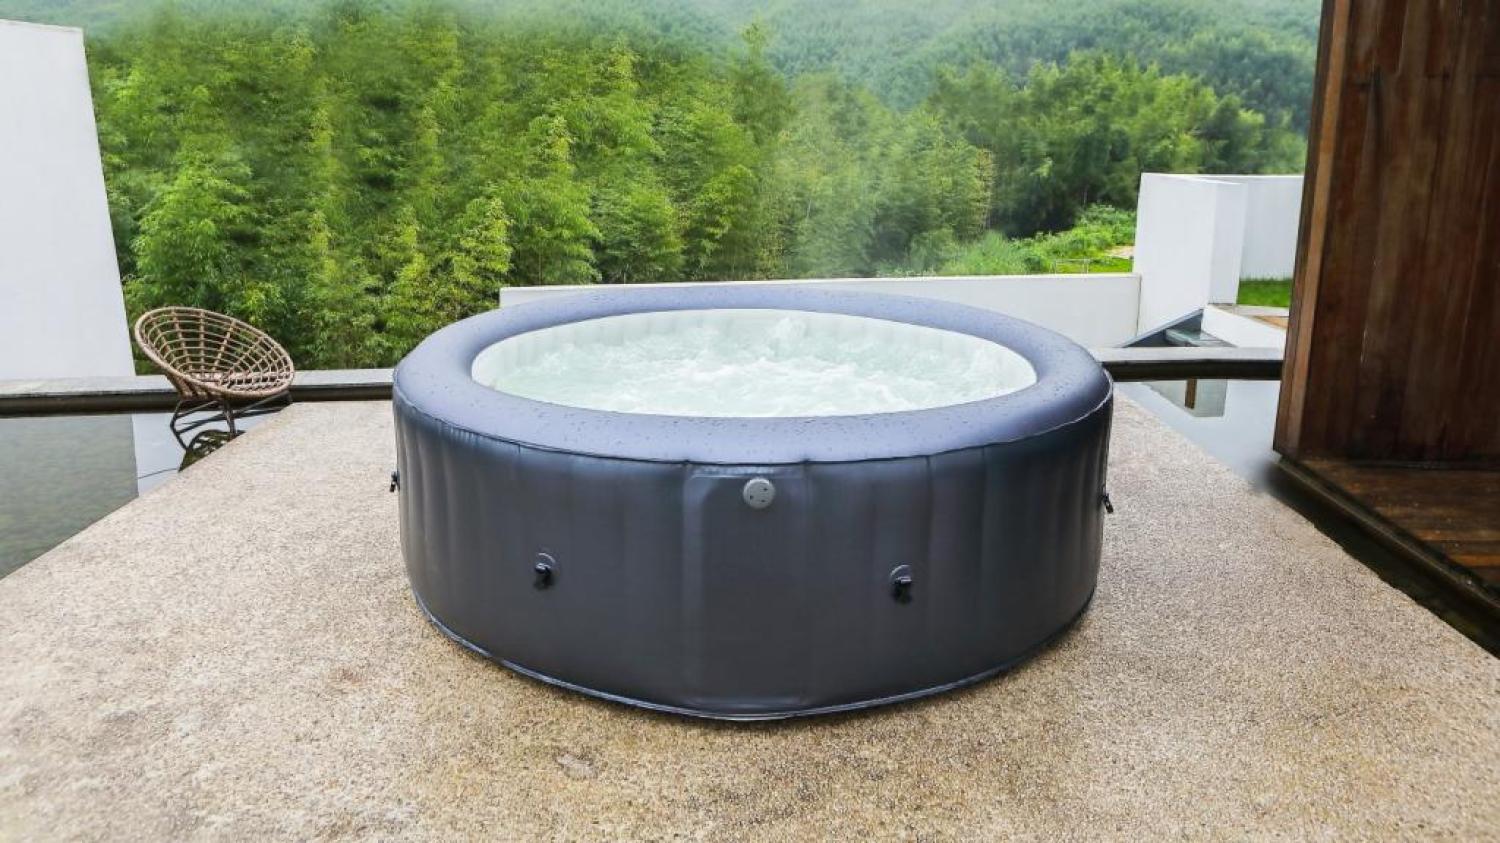 MSpa PureHaven aufblasbarer Whirlpool 204x204x70 cm für 6 Personen selbstreinigend inkl. Filterkatuschen und Abdeckung Leergewicht 42 kg Bild 1